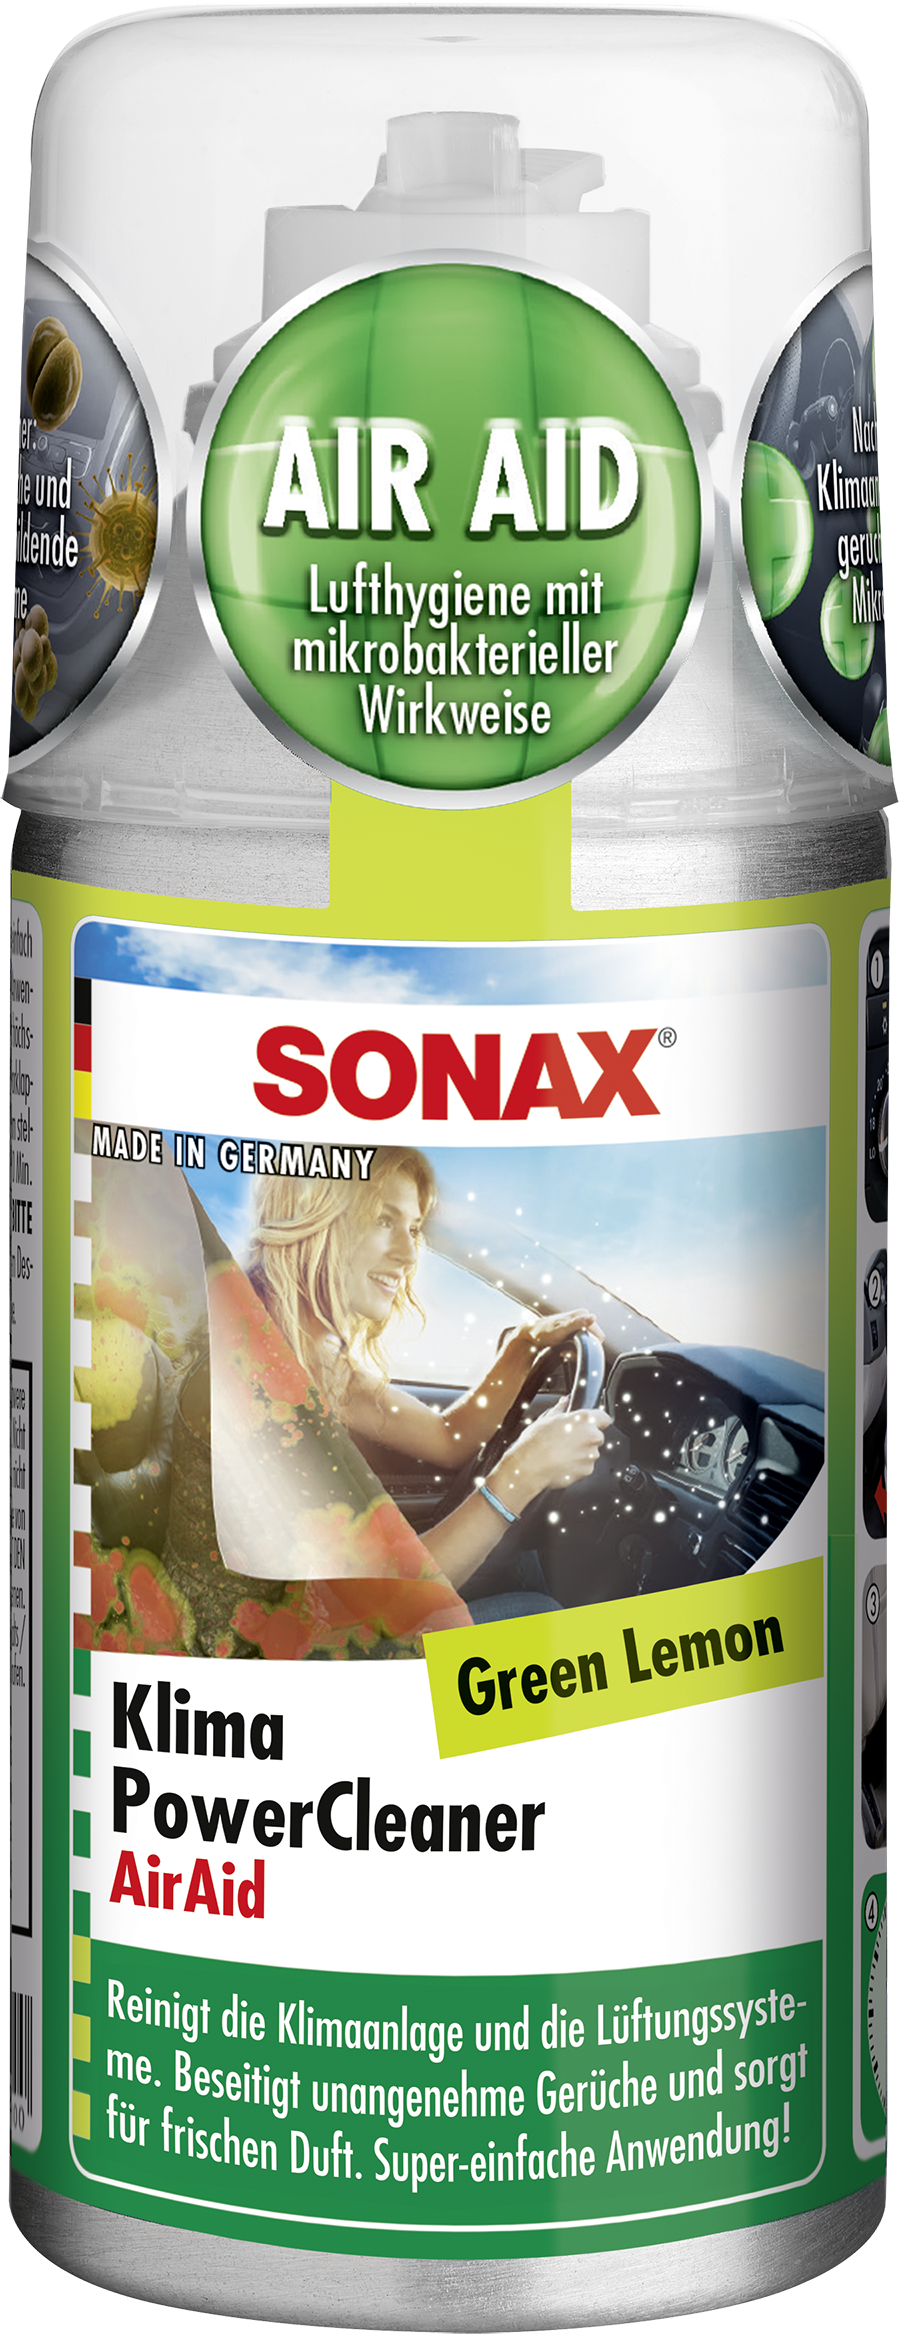 SONAX KlimaPowerCleaner AirAid Green Lemon 100 ml